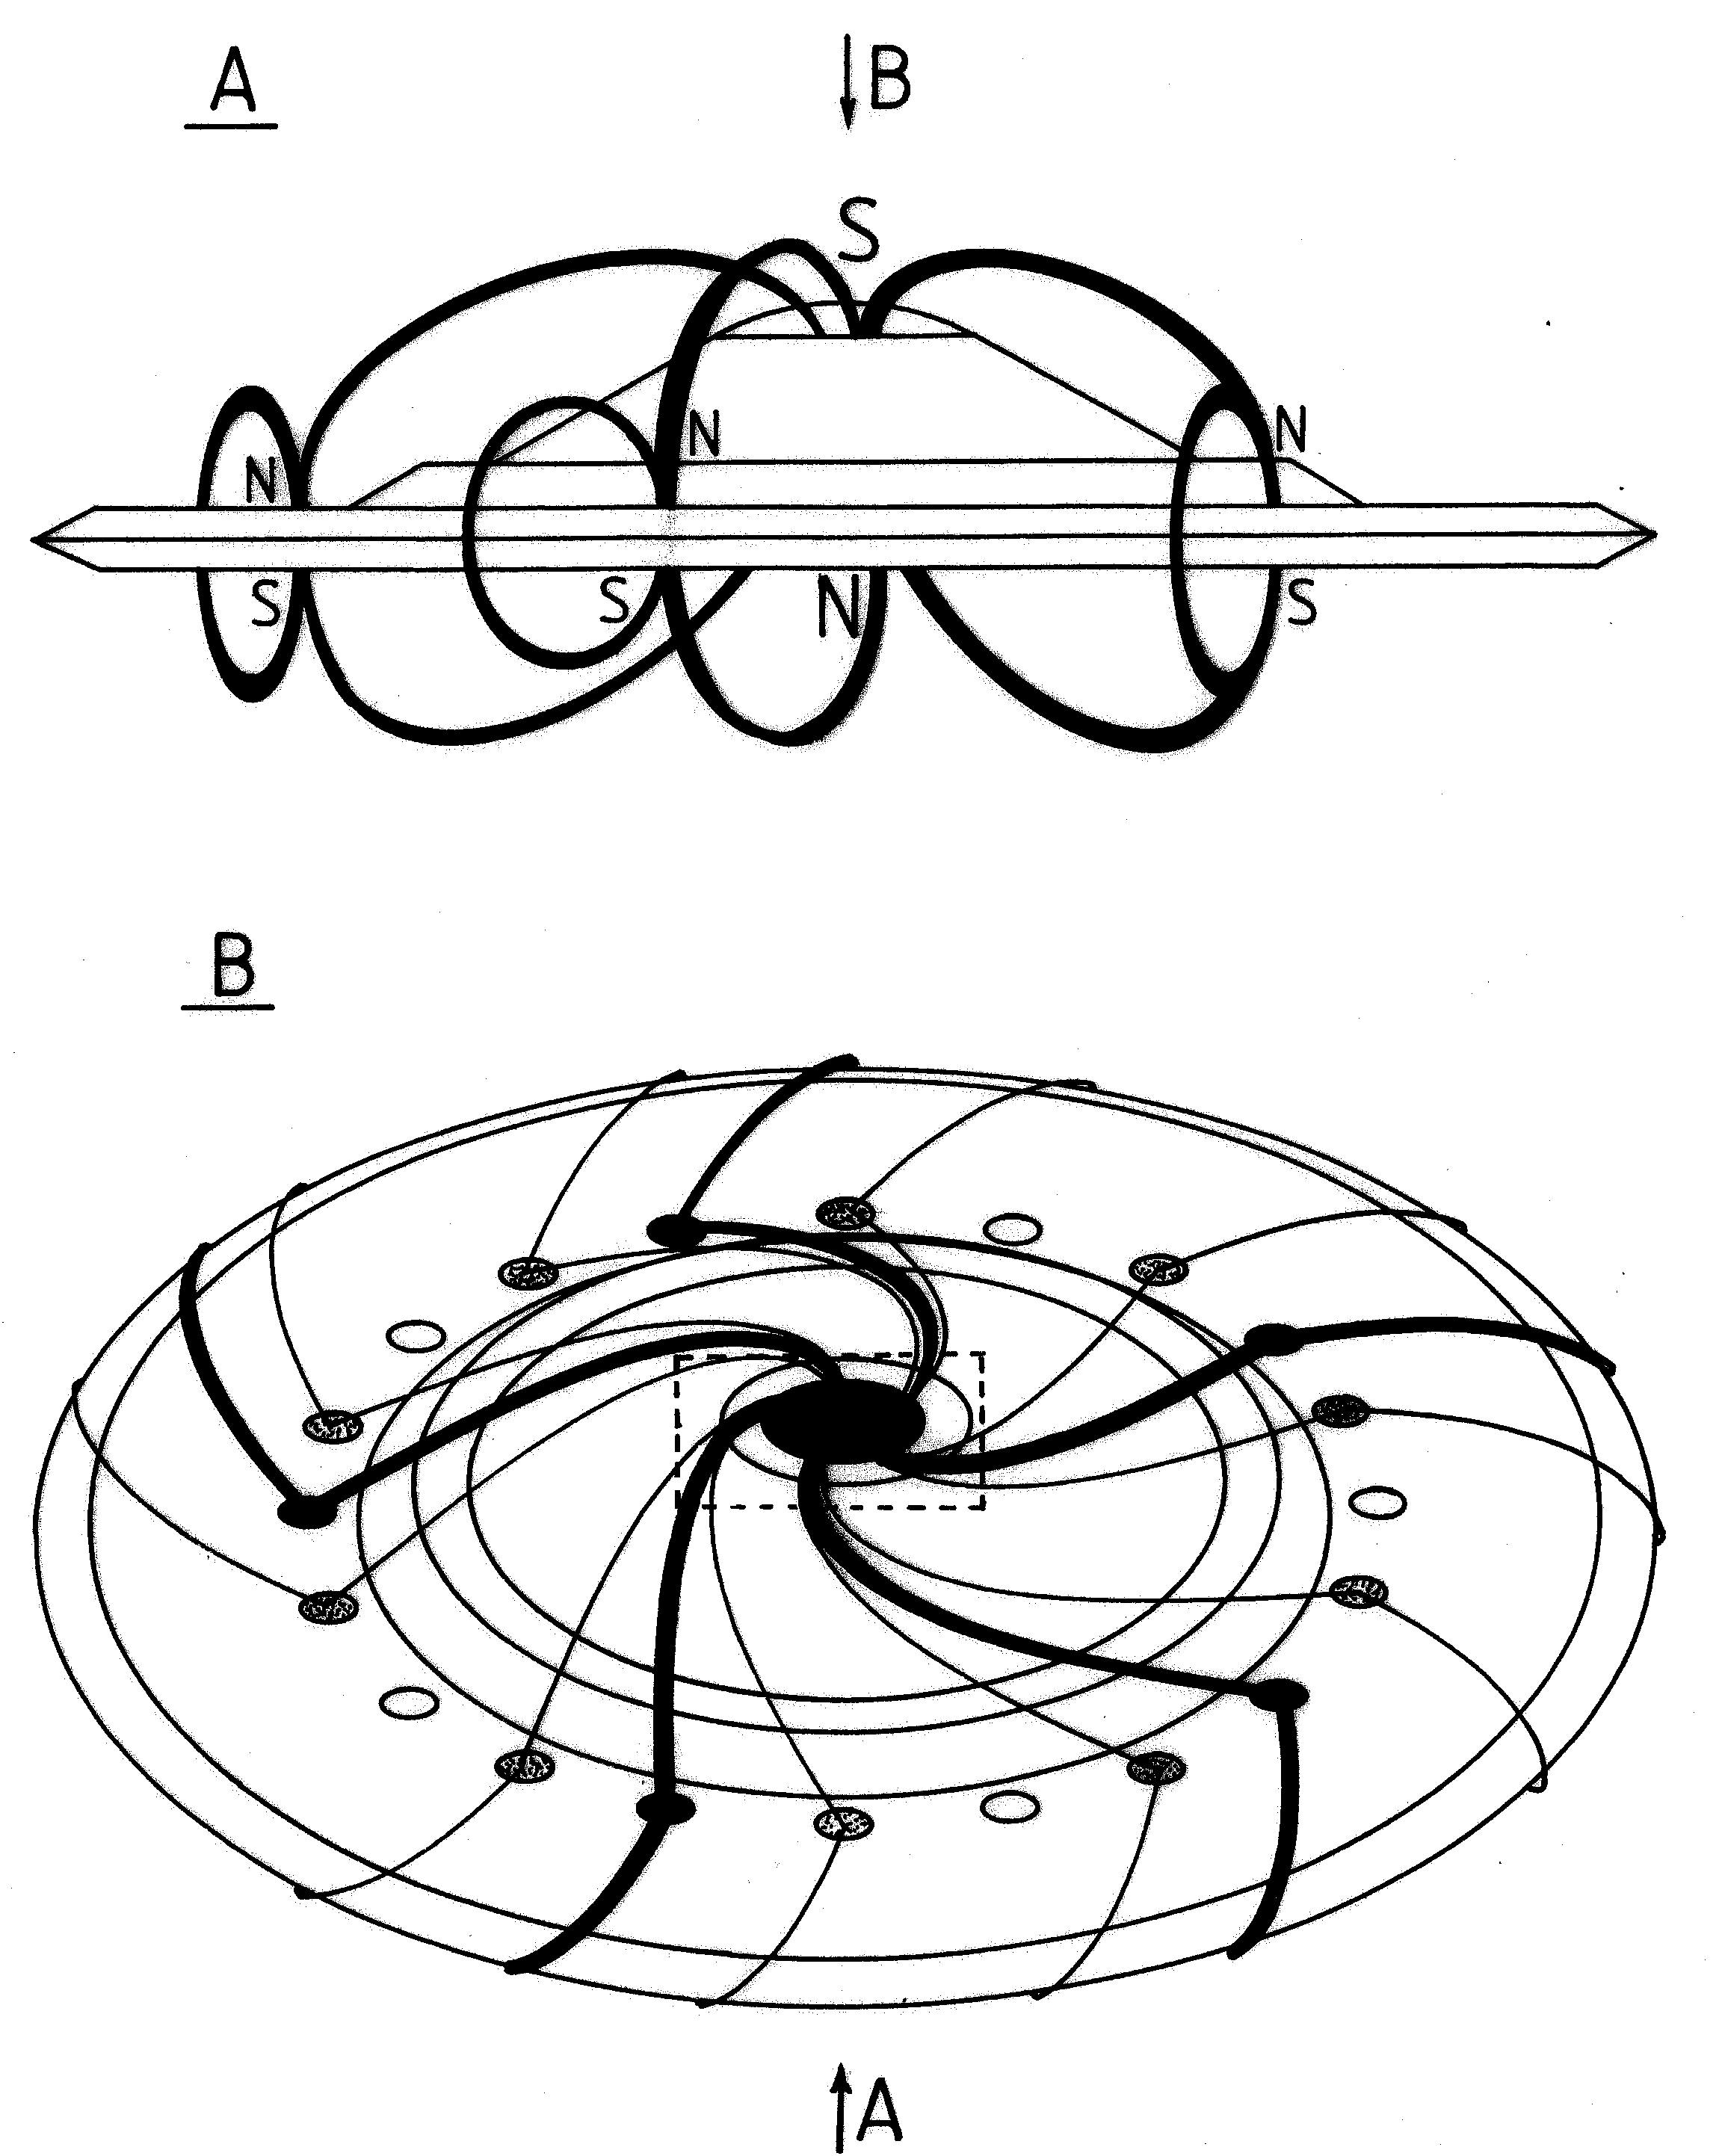 Fig./Rys. O19(ab) in/w [1/3]